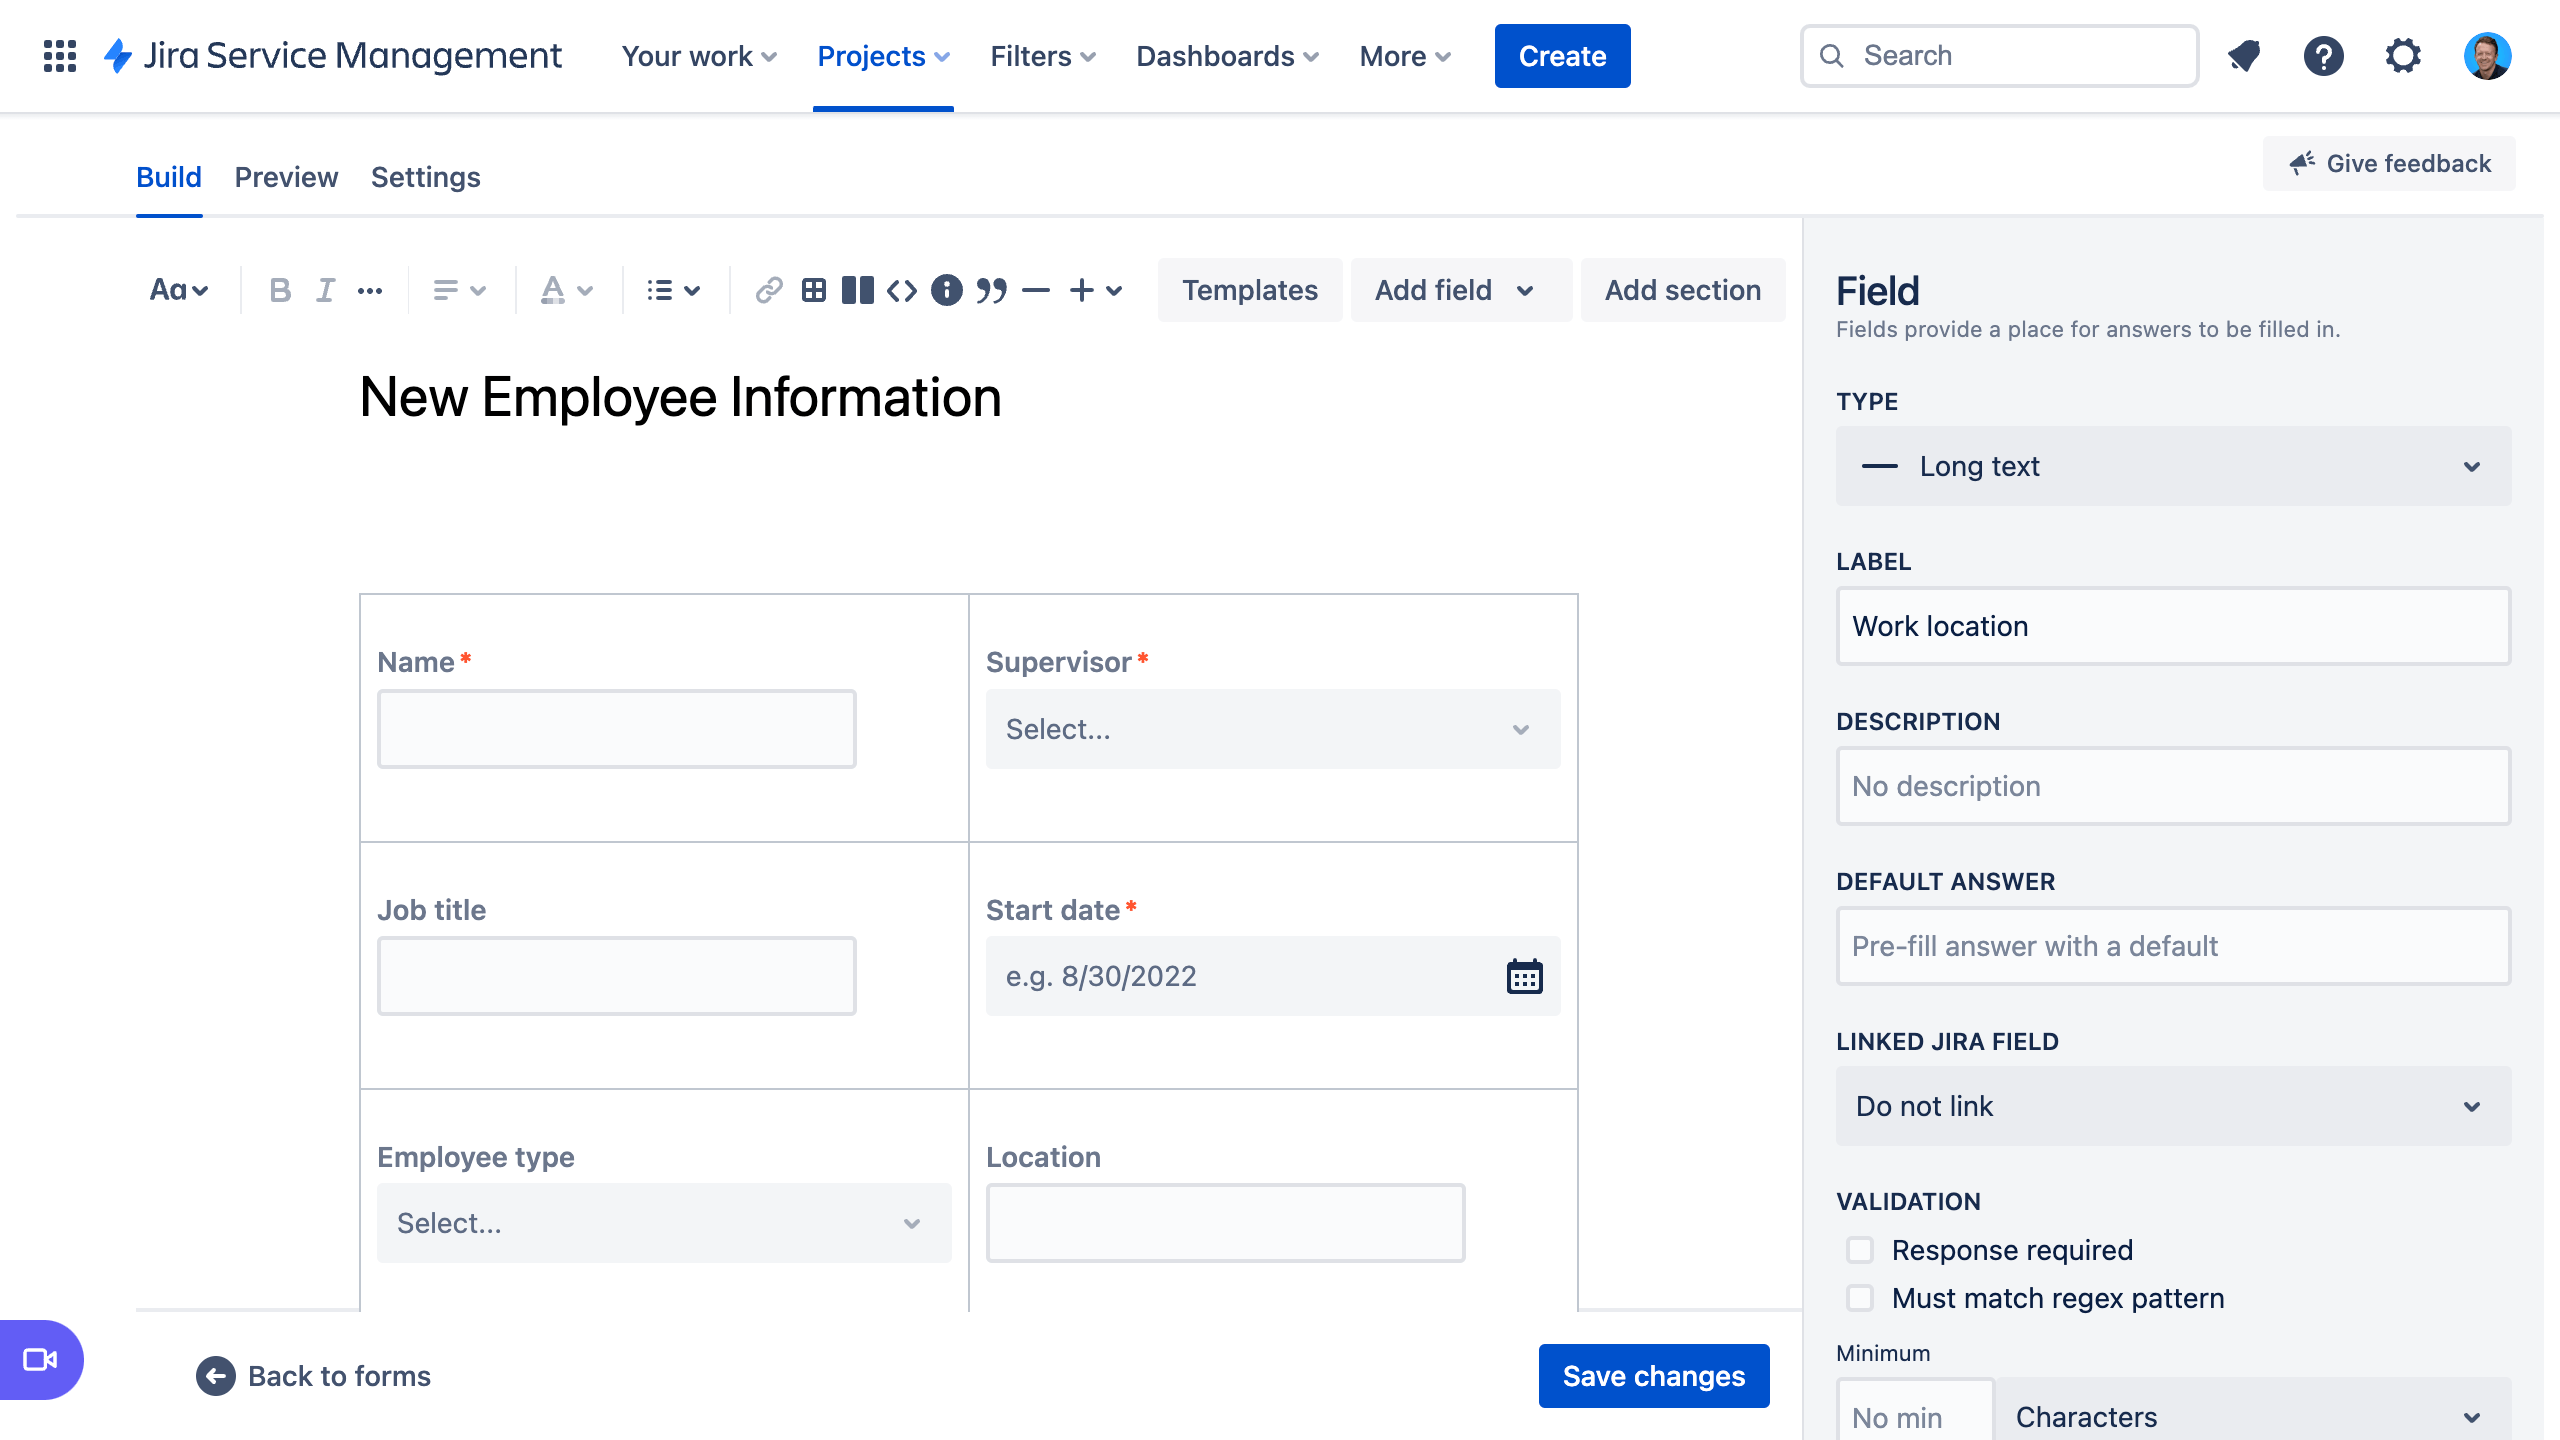 schermafbeelding van een formulier met informatie voor nieuwe werknemers